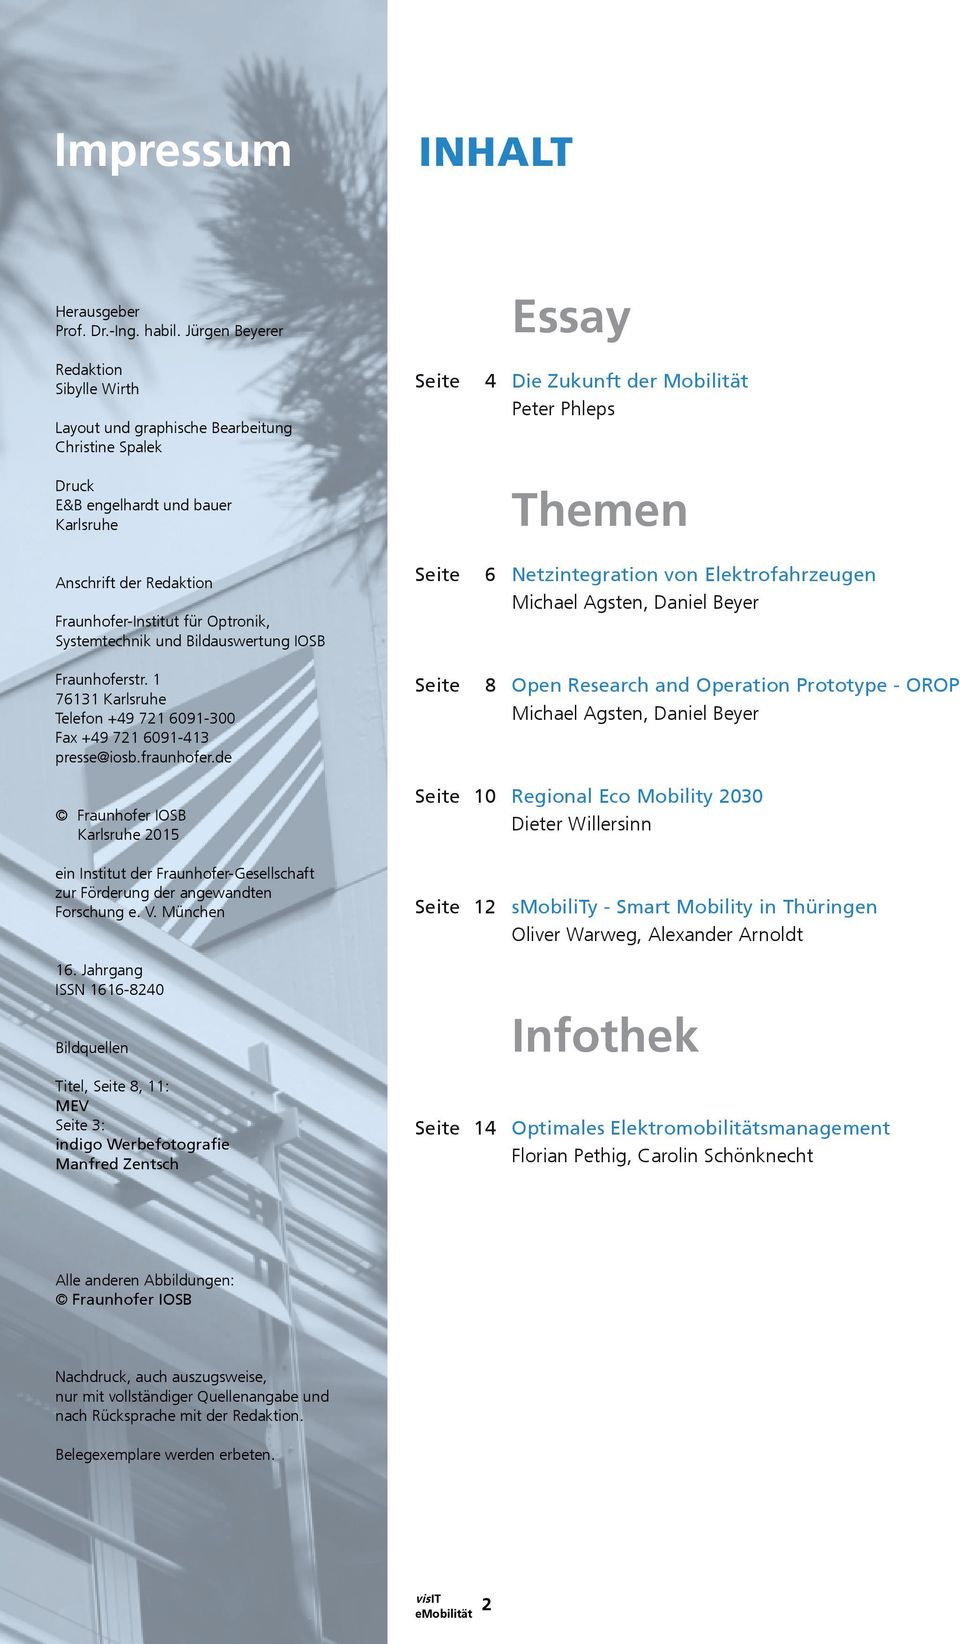 Anschrift der Redaktion Fraunhofer-Institut für Optronik, Systemtechnik und Bildauswertung IOSB Seite 6 Netzintegration von Elektrofahrzeugen Michael Agsten, Daniel Beyer Fraunhoferstr.